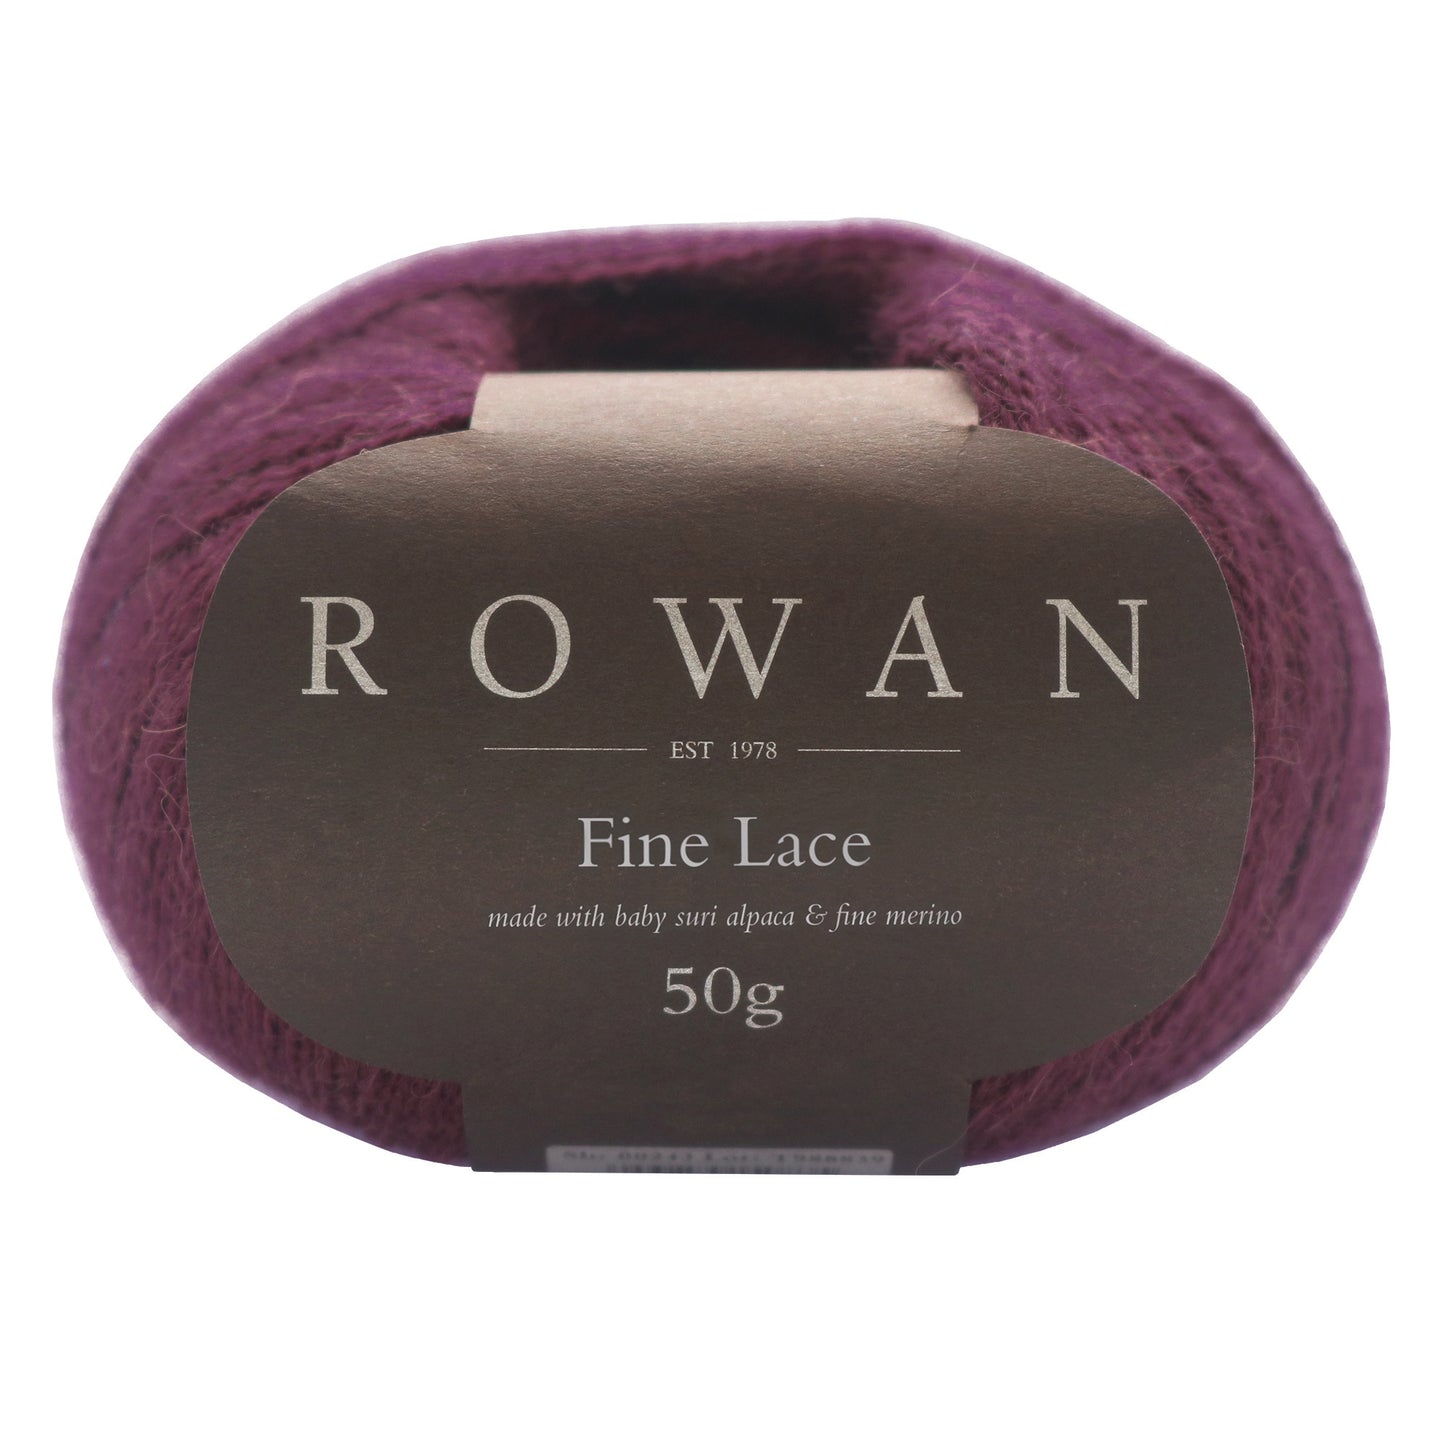 Rowan Fine Lace